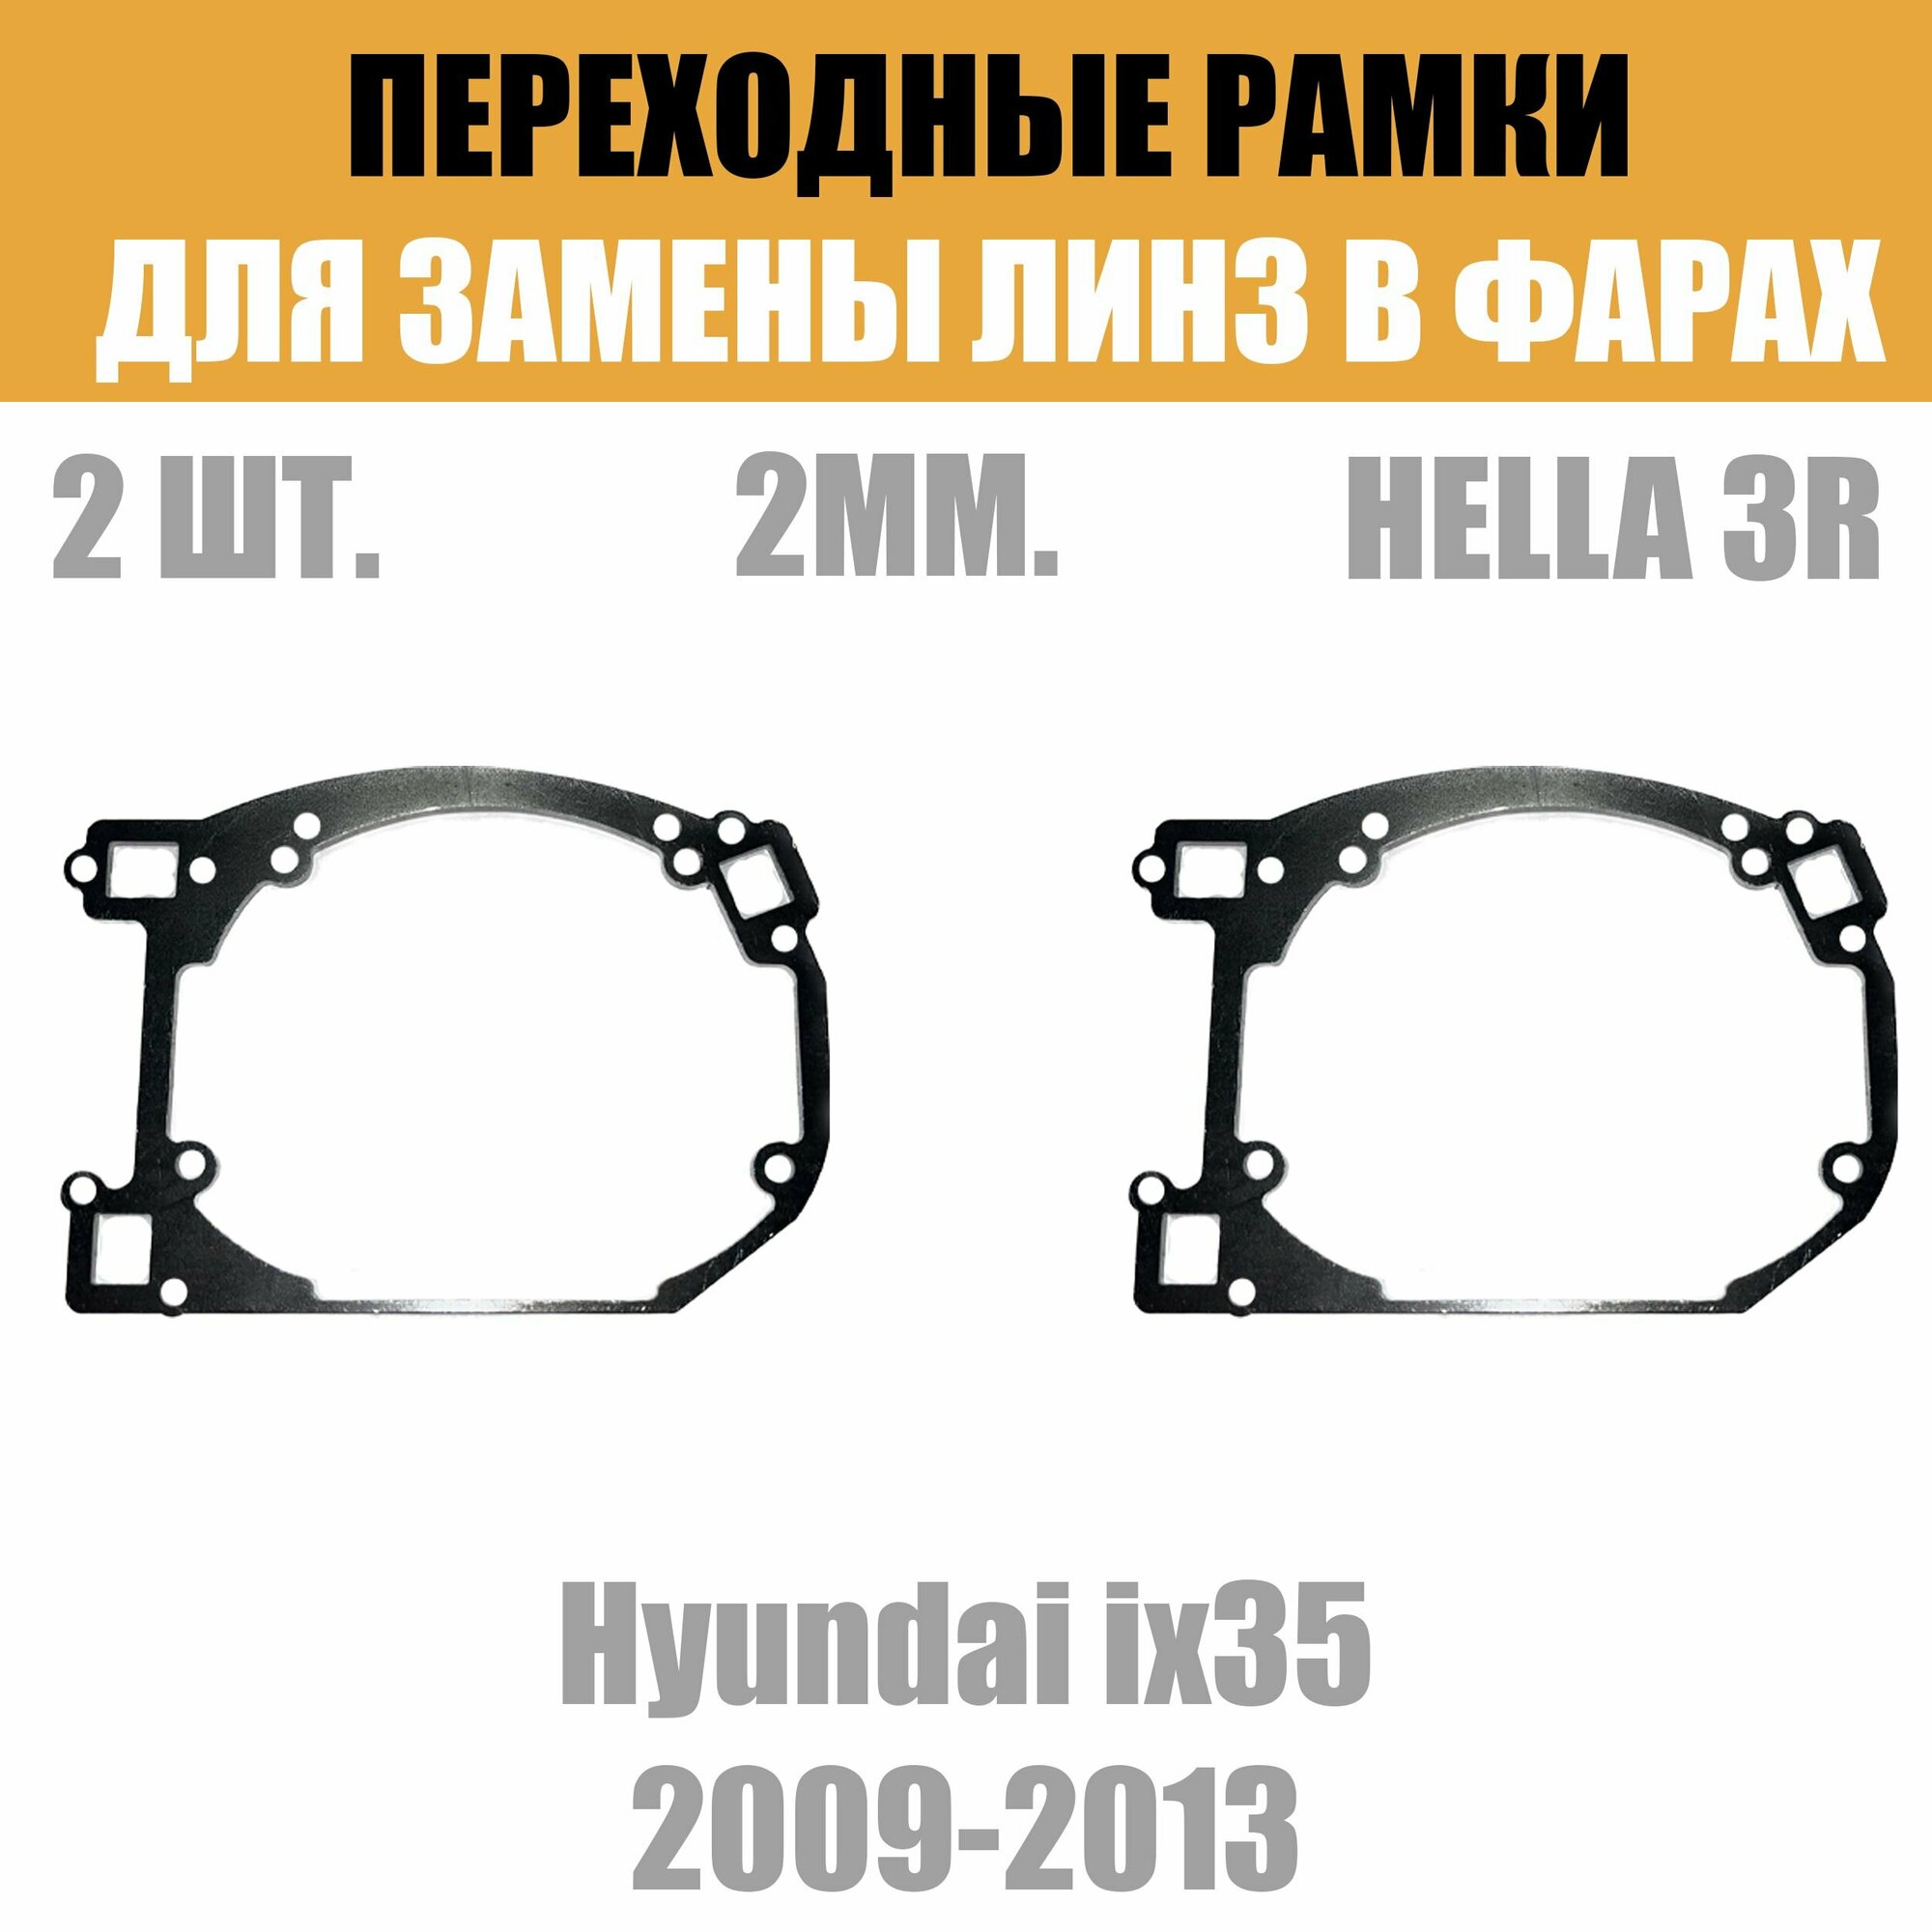 Переходные рамки для линз №62 на Hyundai ix35 2009-2013 под модуль Hella 3R/Hella 3 (Комплект 2шт)